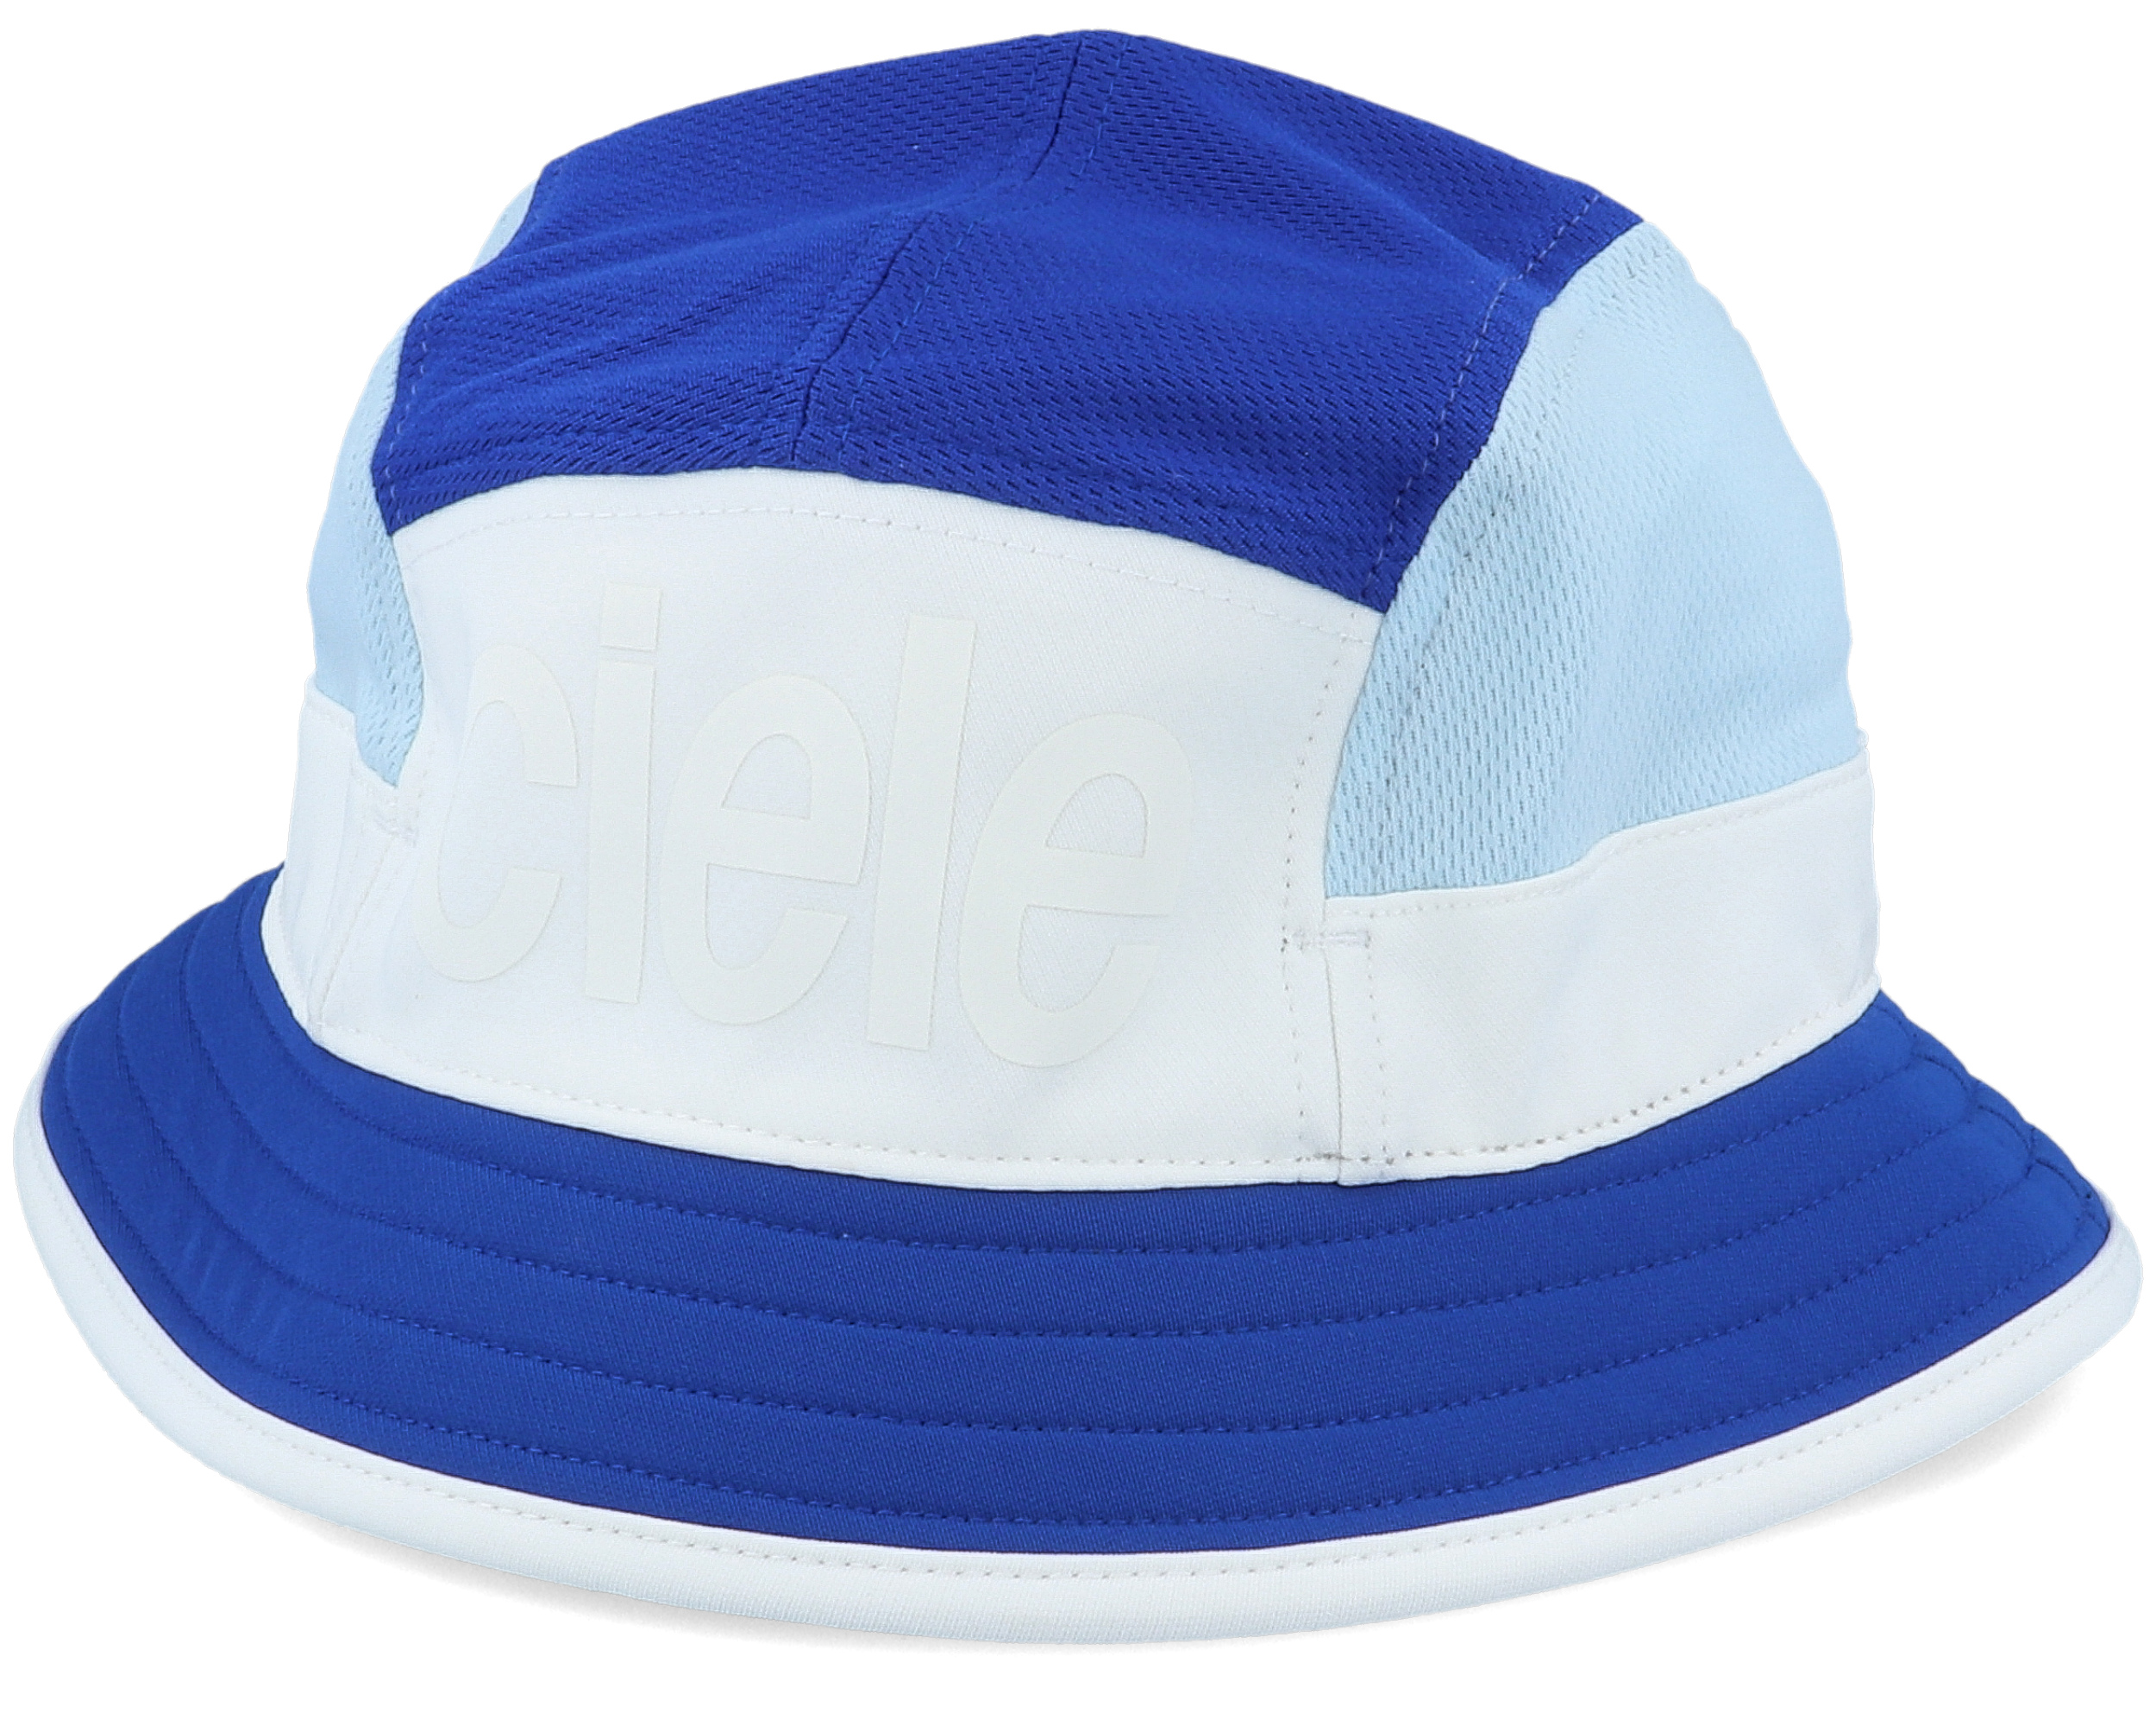 Bkthat Standard Large Victory White/Blue Bucket - Ciele hat | Hatstore ...